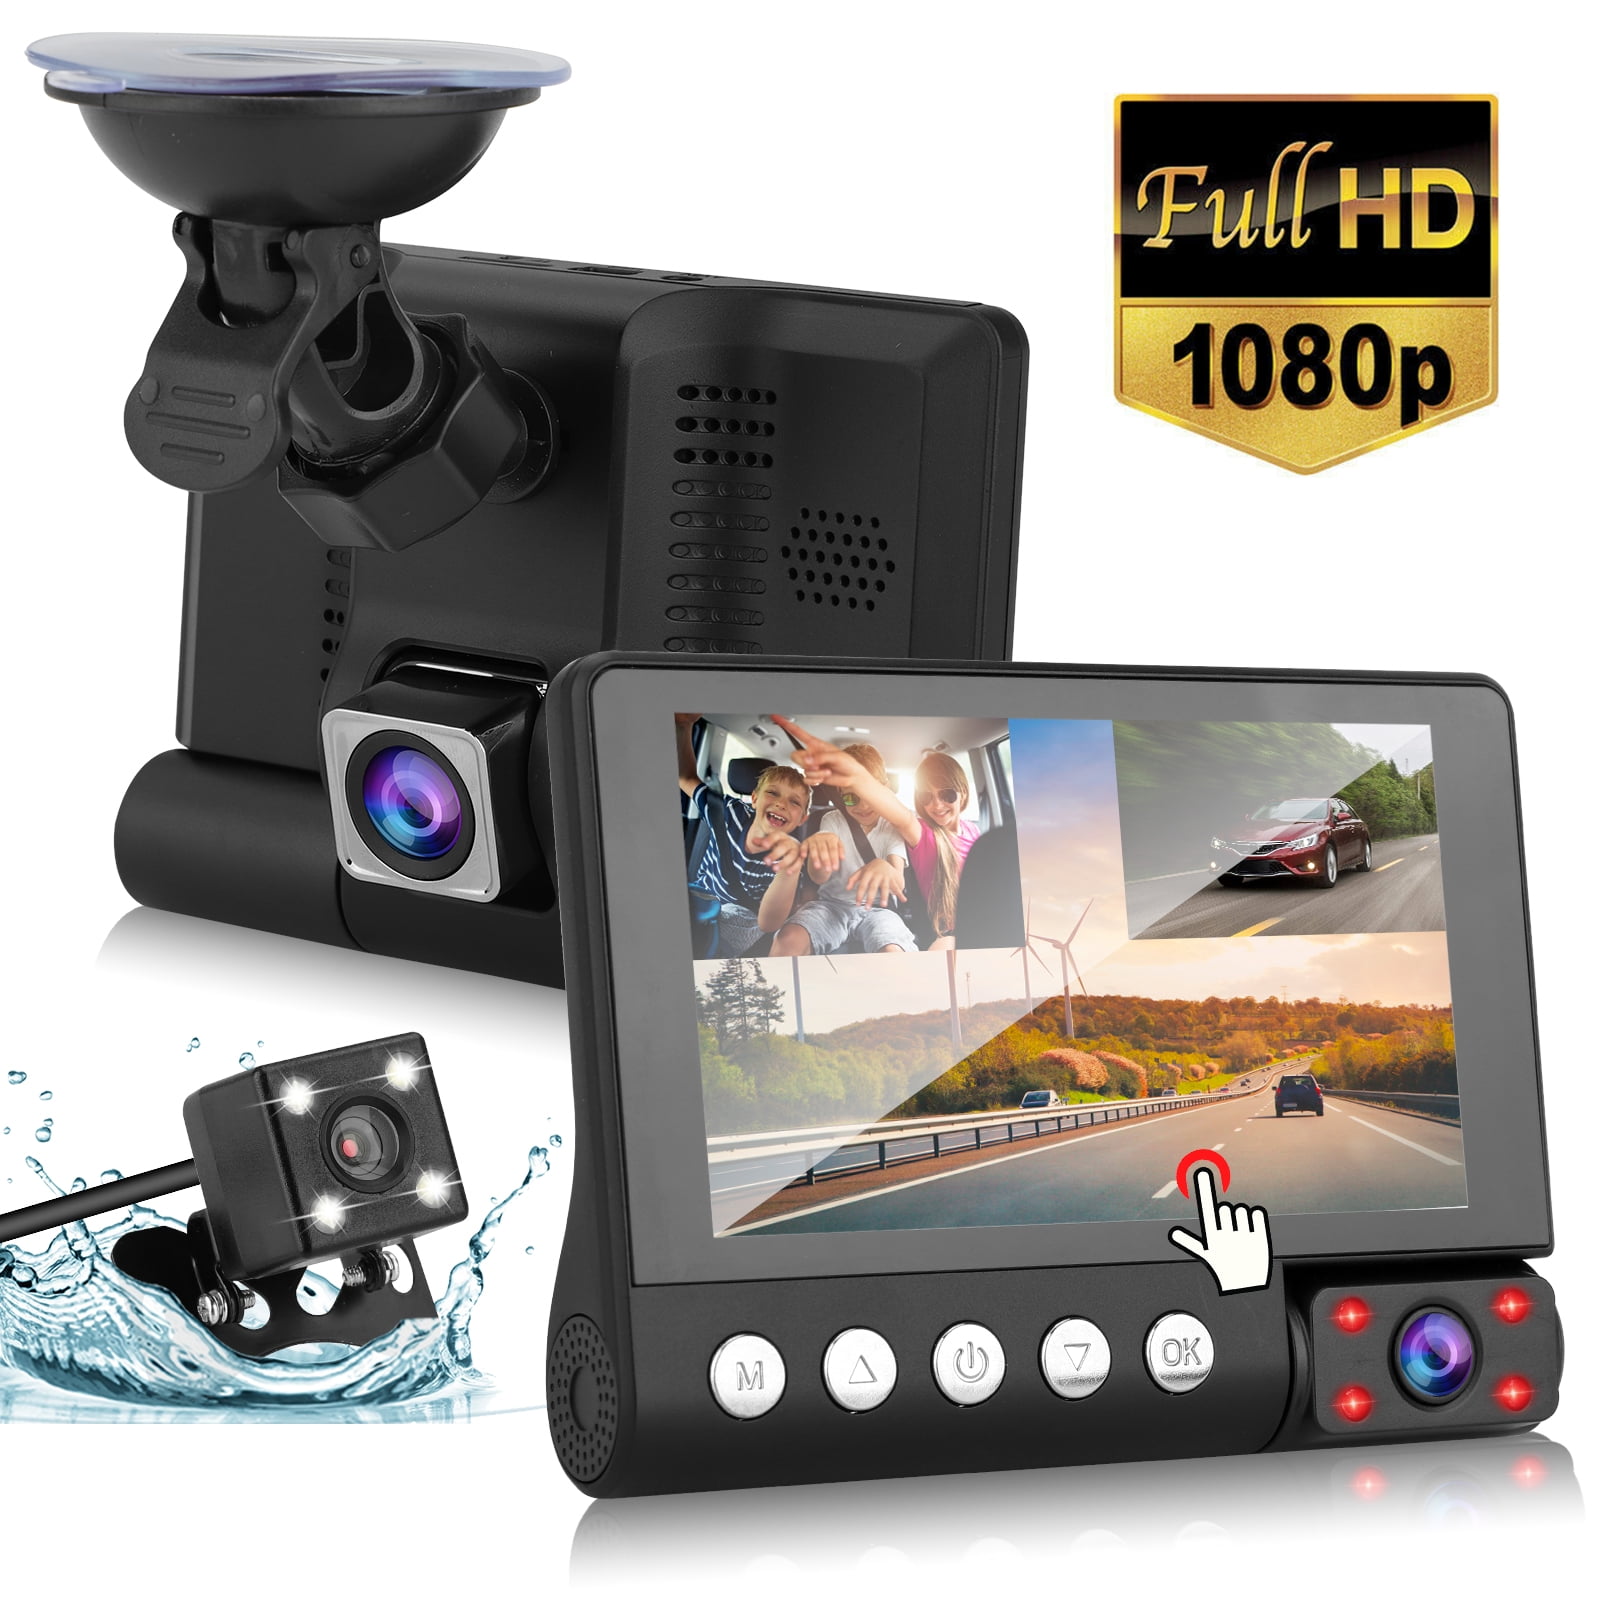 Caméra Embarquée Voiture Dashcam Full HD 1080P,4 Pouces Voiture Grand Angle 170° Mode Stationnement Détection Mouvement Enregistrement Boucle Carte SD 32 Go 3 Lens Dash Cam + 32G Micro SD Card 